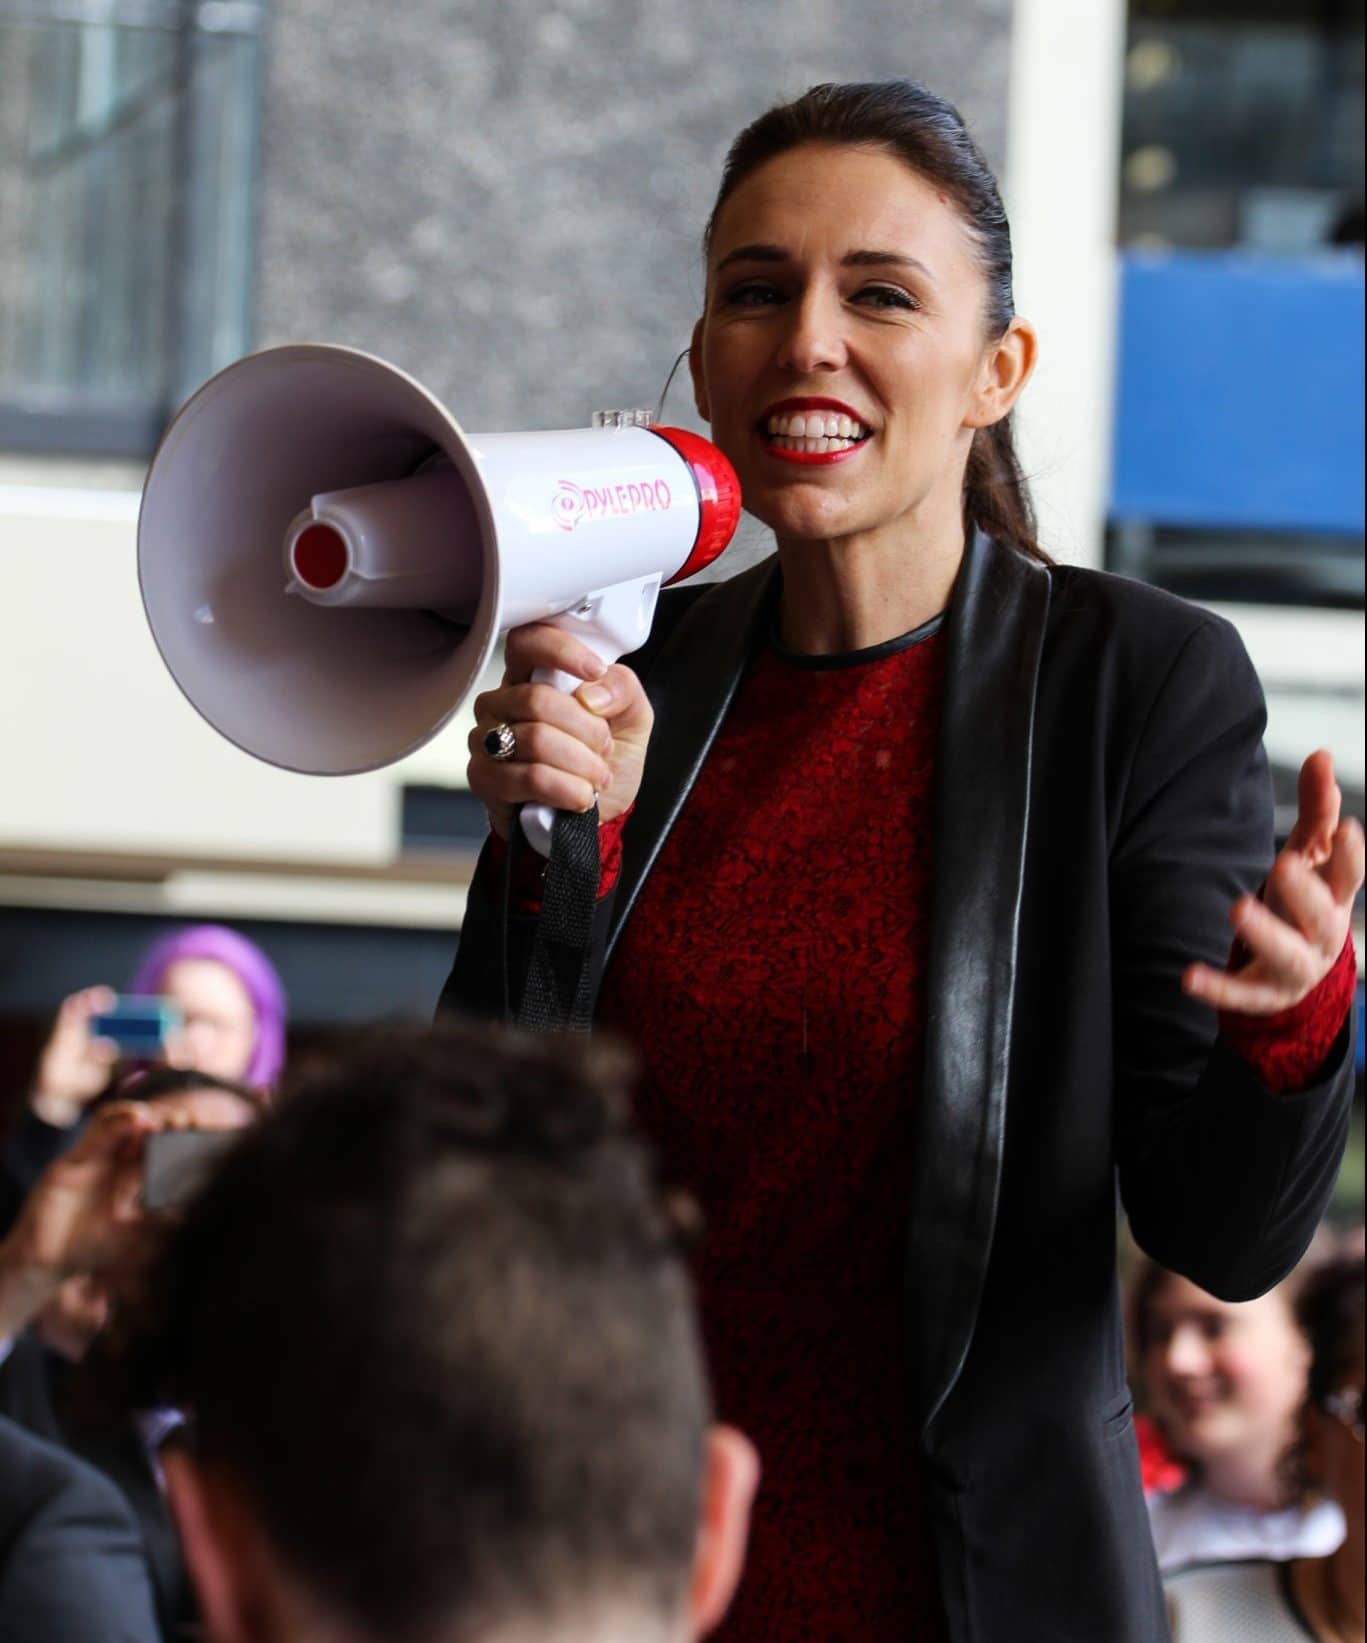 Jacinda Ardern speaking to a crowd of people using a megaphone